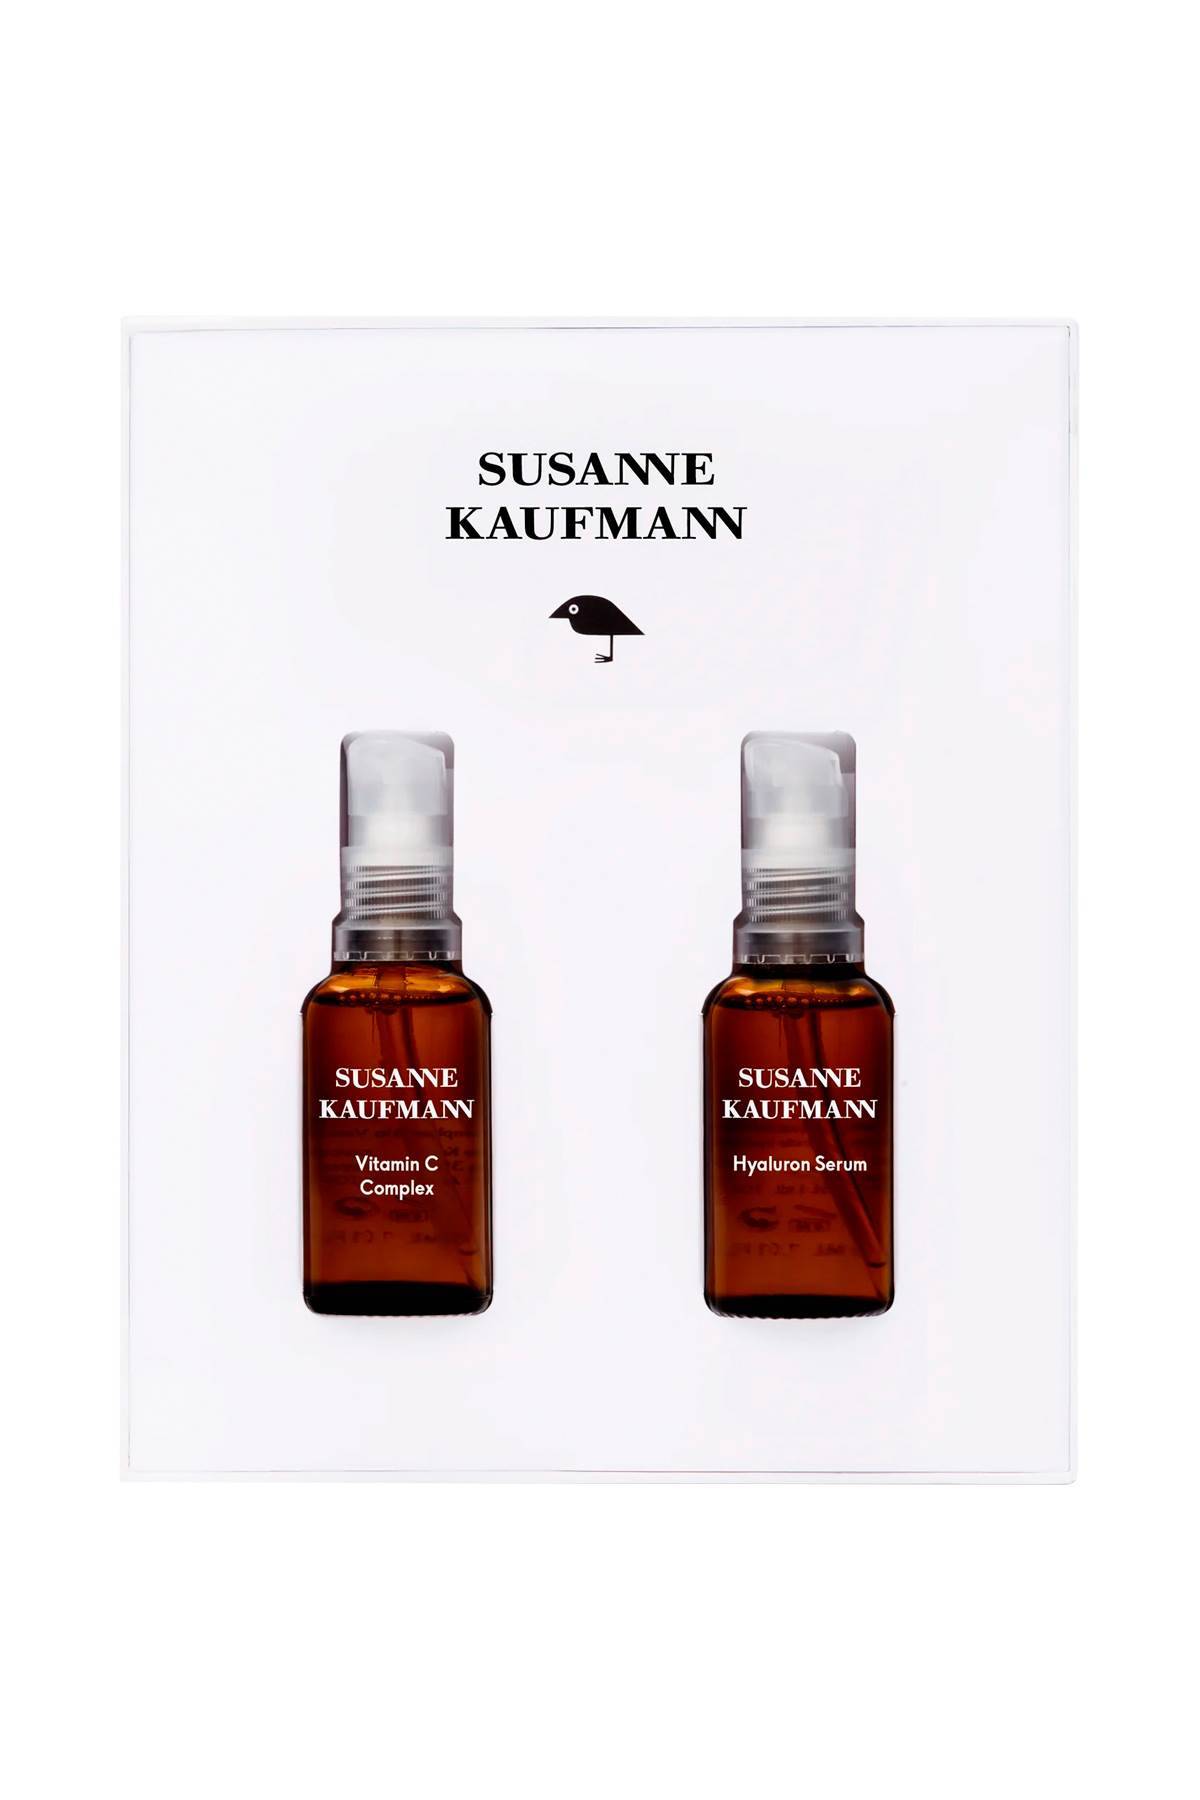 Susanne Kaufmann SUSANNE KAUFMANN signature serums (hyaluron serum, vitamin c complex) - 2x30 ml